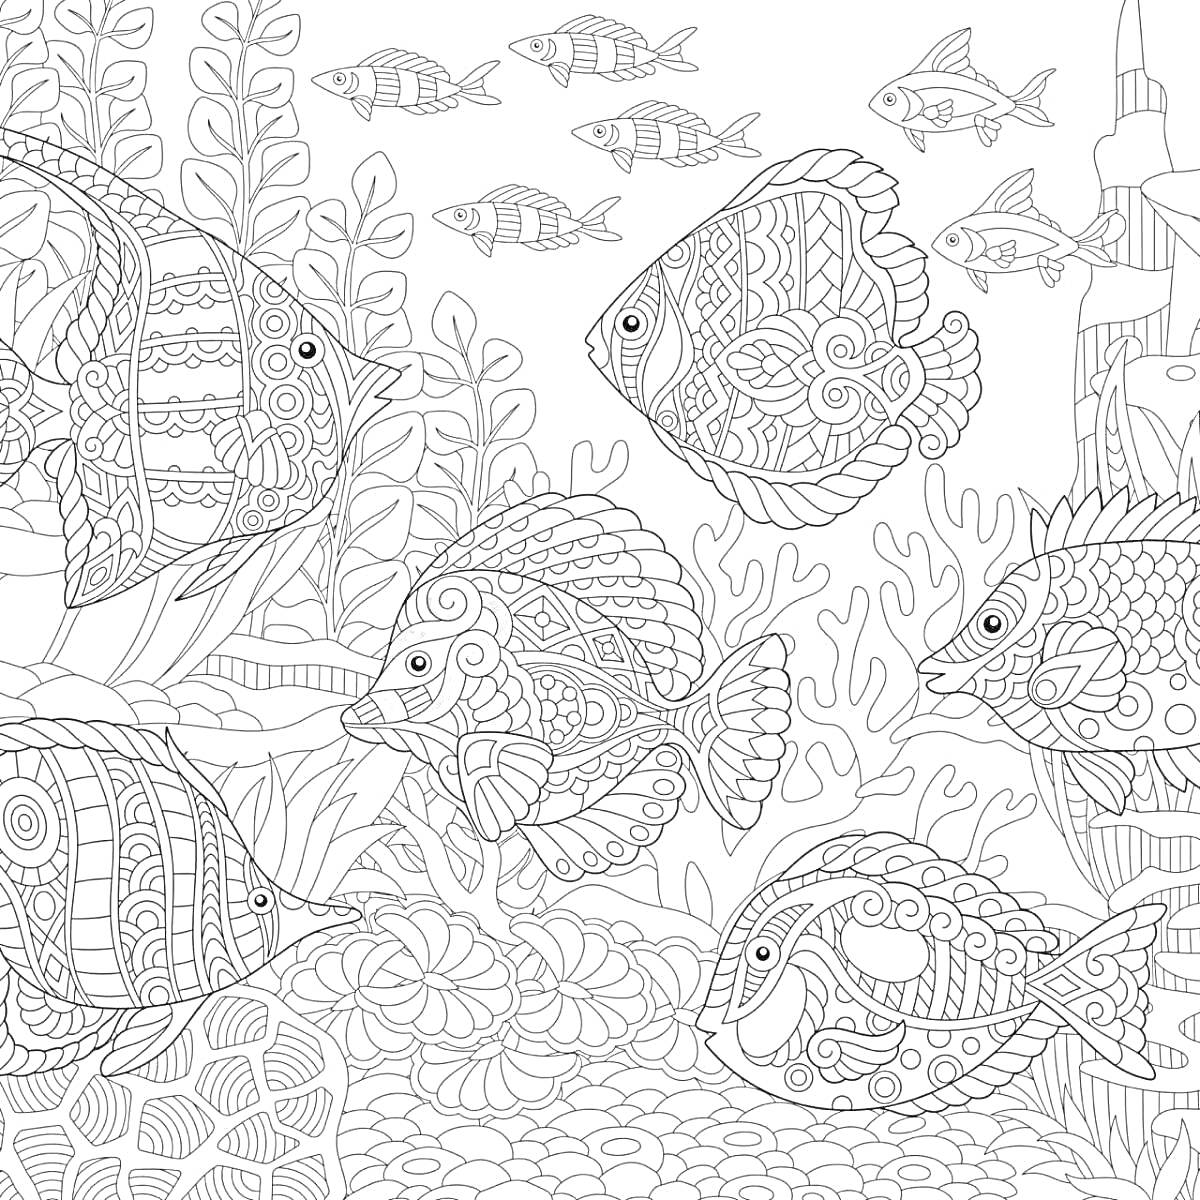 РаскраскаПодводный мир антистресс с рыбами, водорослями, кораллами и подводным замком